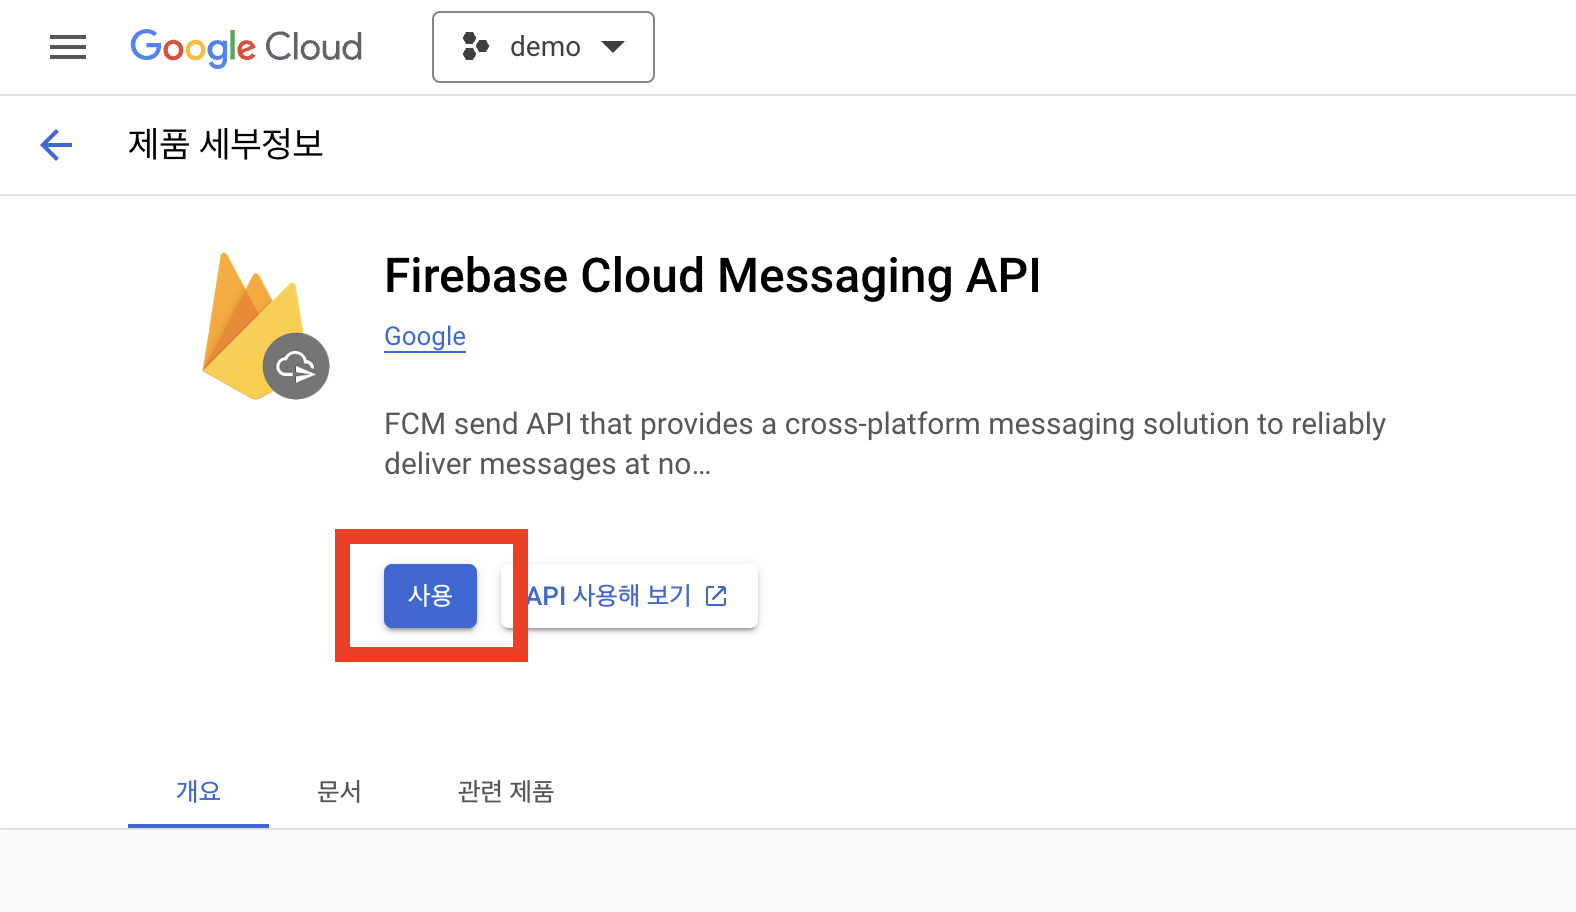 Enable Firebase Cloud Messaging API (V1)